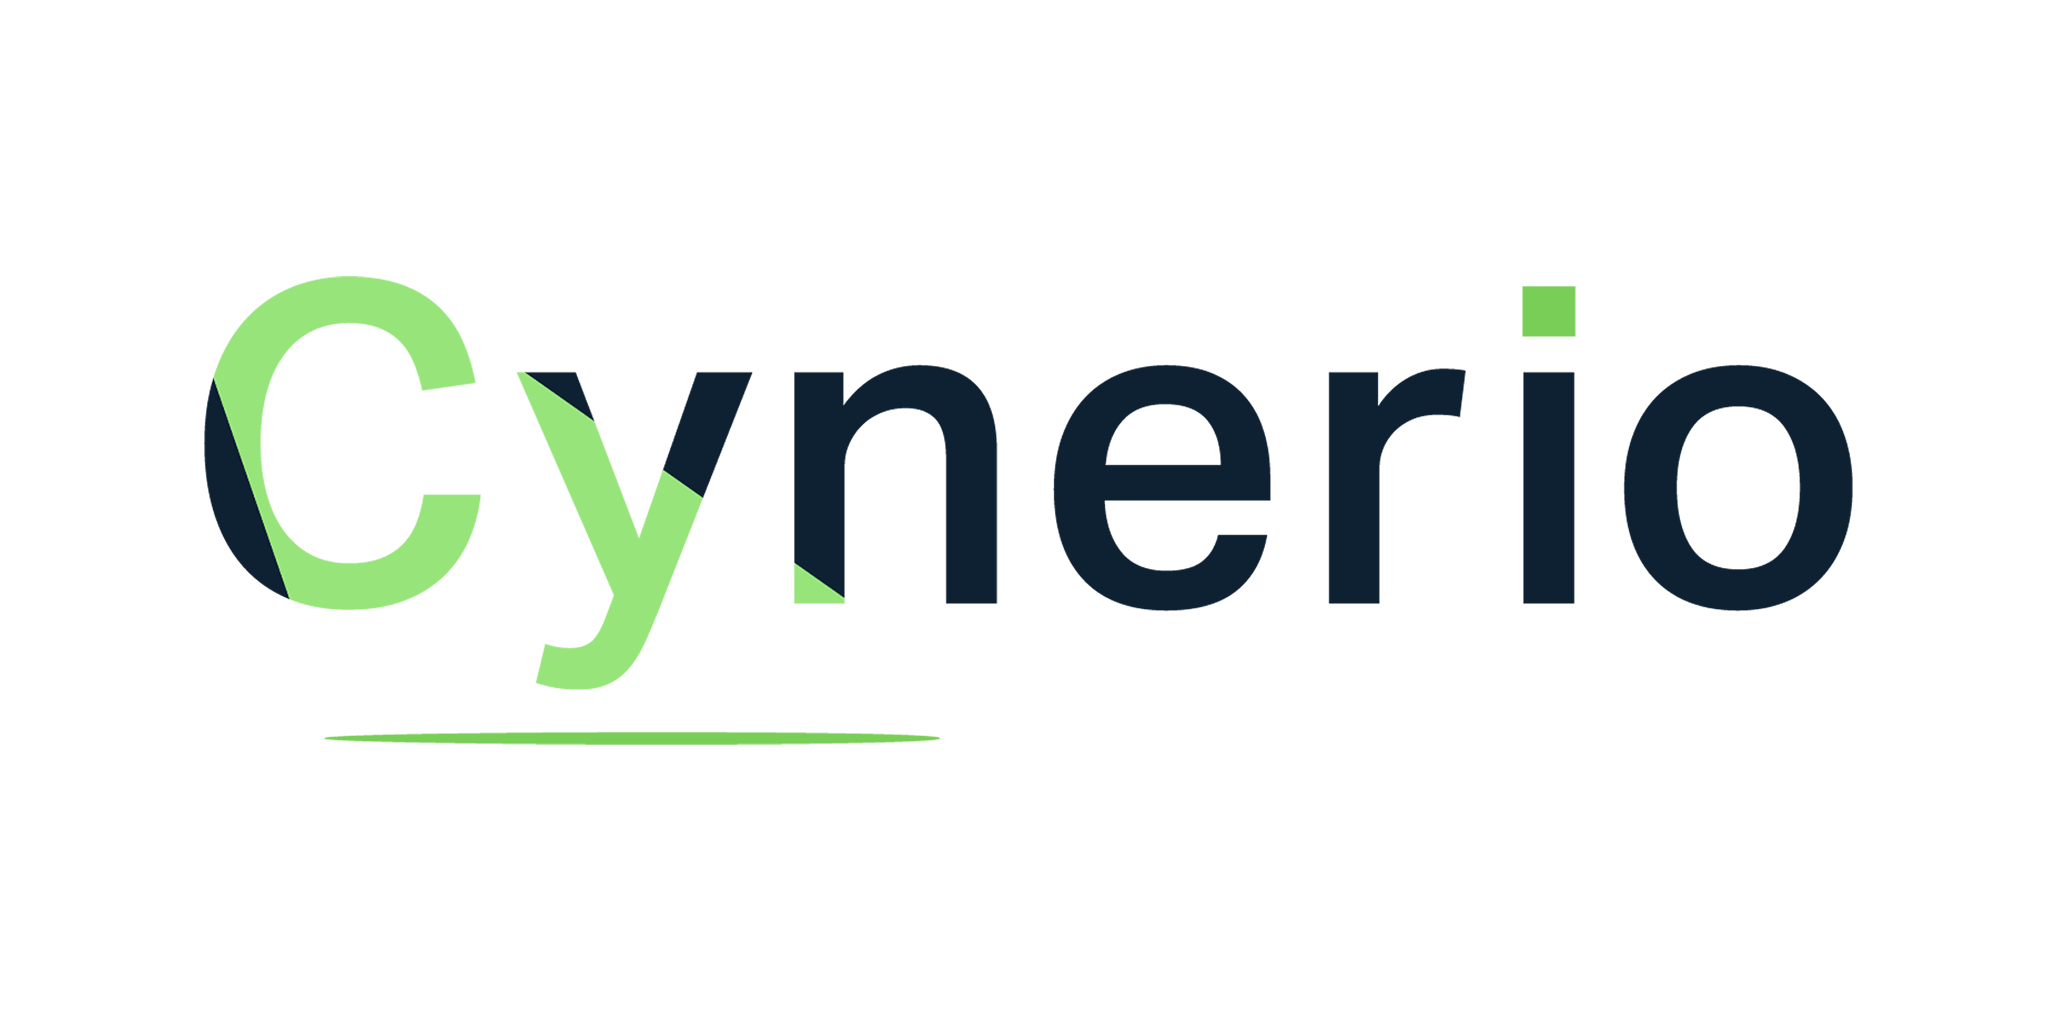 Logo of Cubro Tech Partner Cynerio